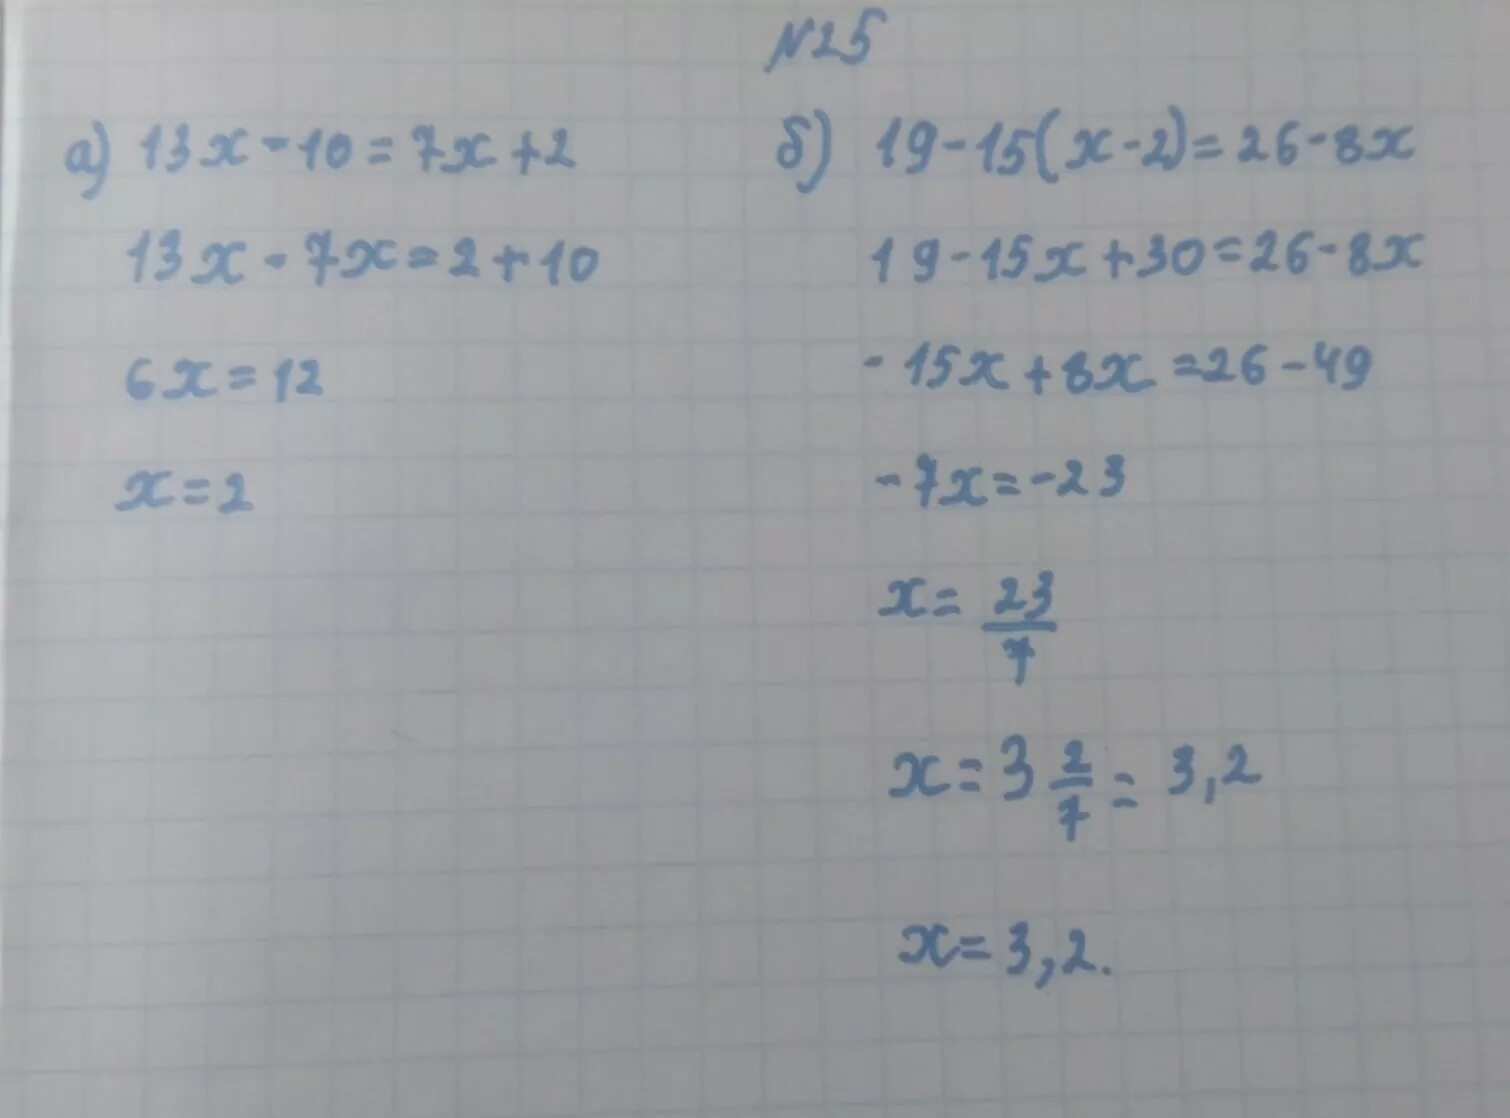 13 X 2 2 X 13 2. (13-Х)(13-X) решение. 13x-26=130 решение. 13х-26 -130 решить. 2x 13x 0